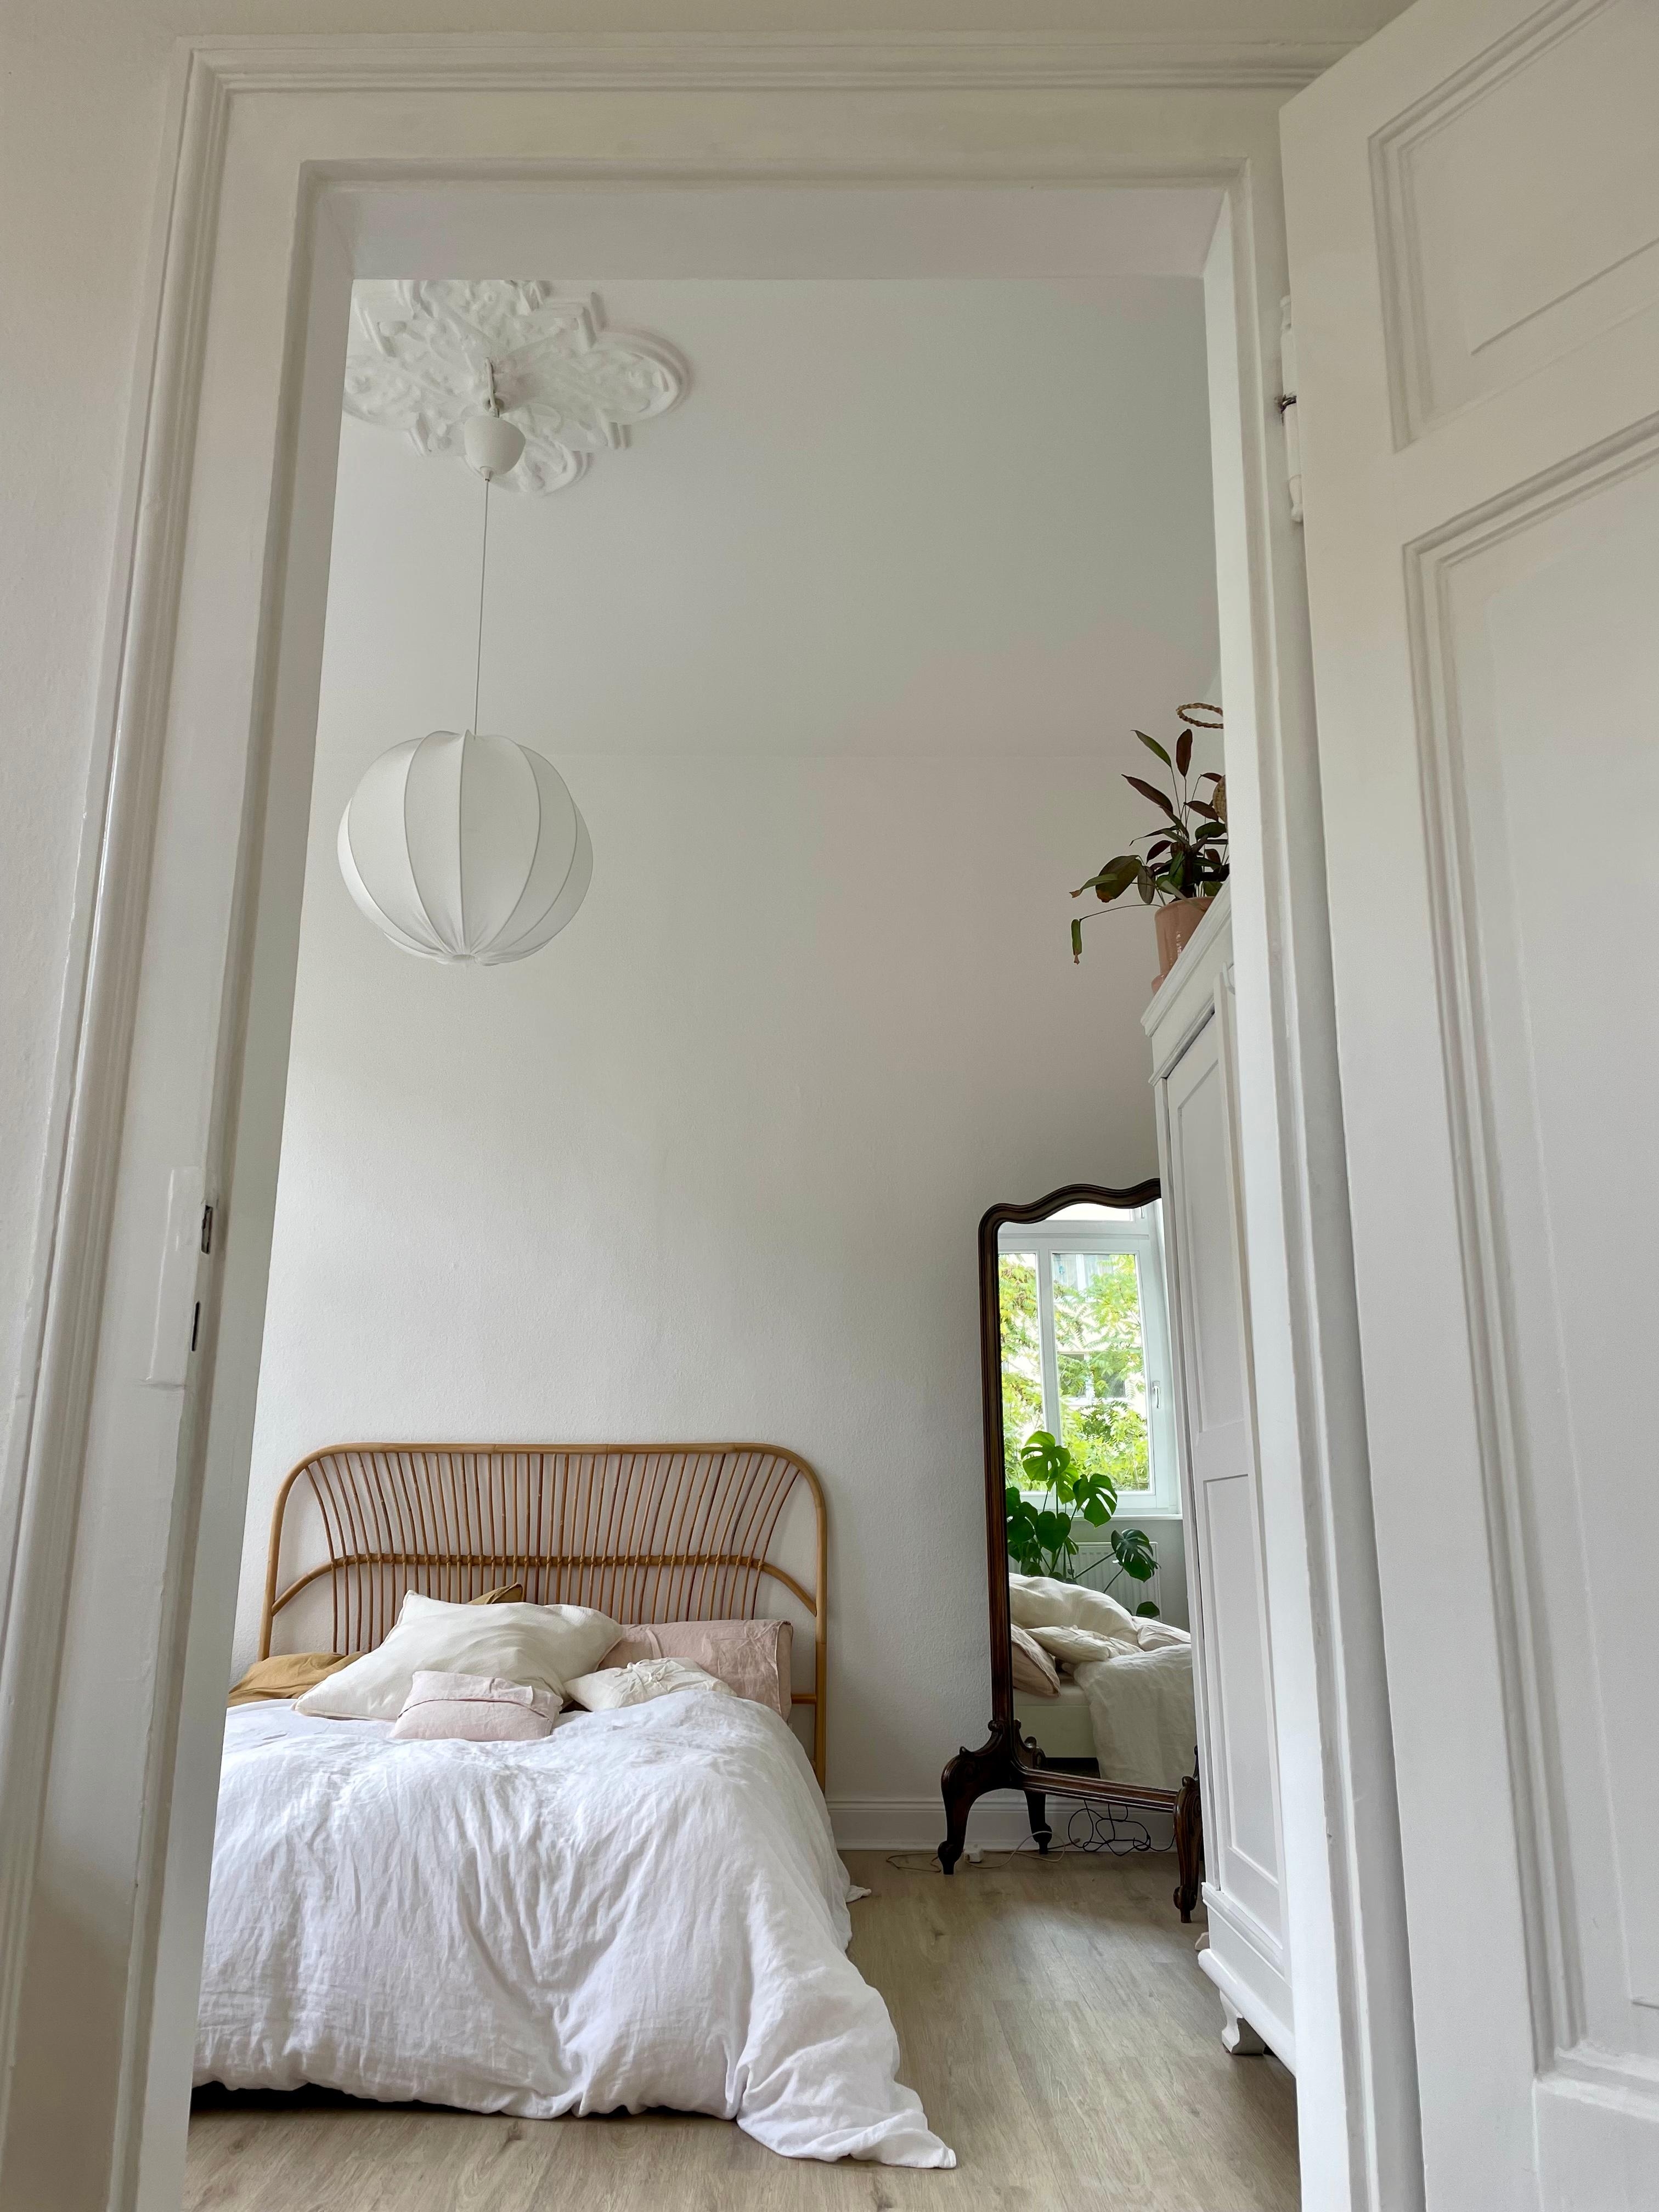 Blick ins Grüne durch den Spiegel ☀️ #minimalismus #zuhause #altbau #stuck #frischbewohnt #40qm